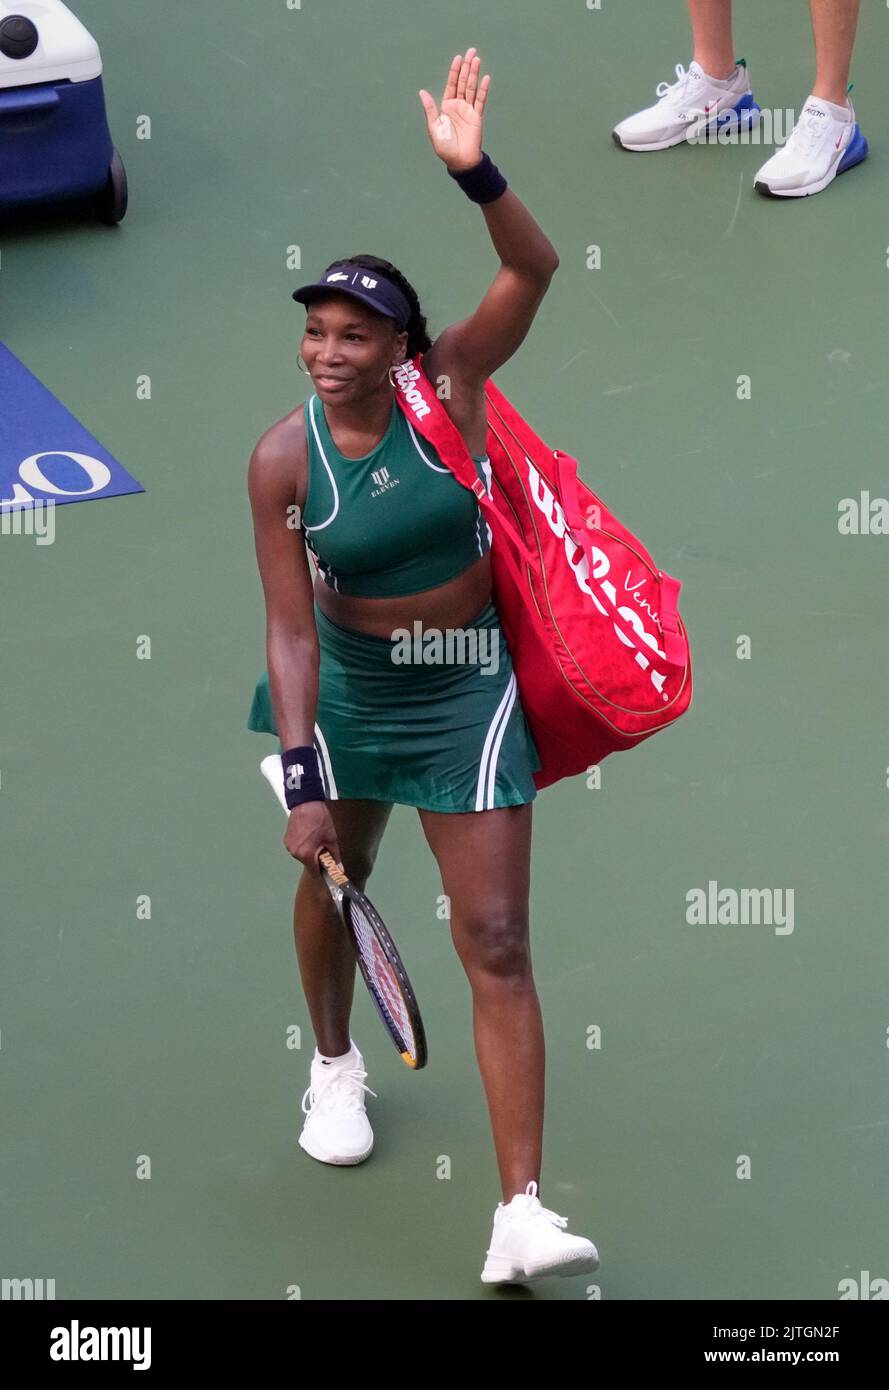 30. August 2022: Venus Williams (USA) verliert gegen Alison Van Uylvanck (Bel), 6-1, 7-6 bei den US Open, gespielt im Billie Jean King Ntional Tennis Center in Flushing, Queens, New York, {USA} © Grace Schultz/CSM Stockfoto